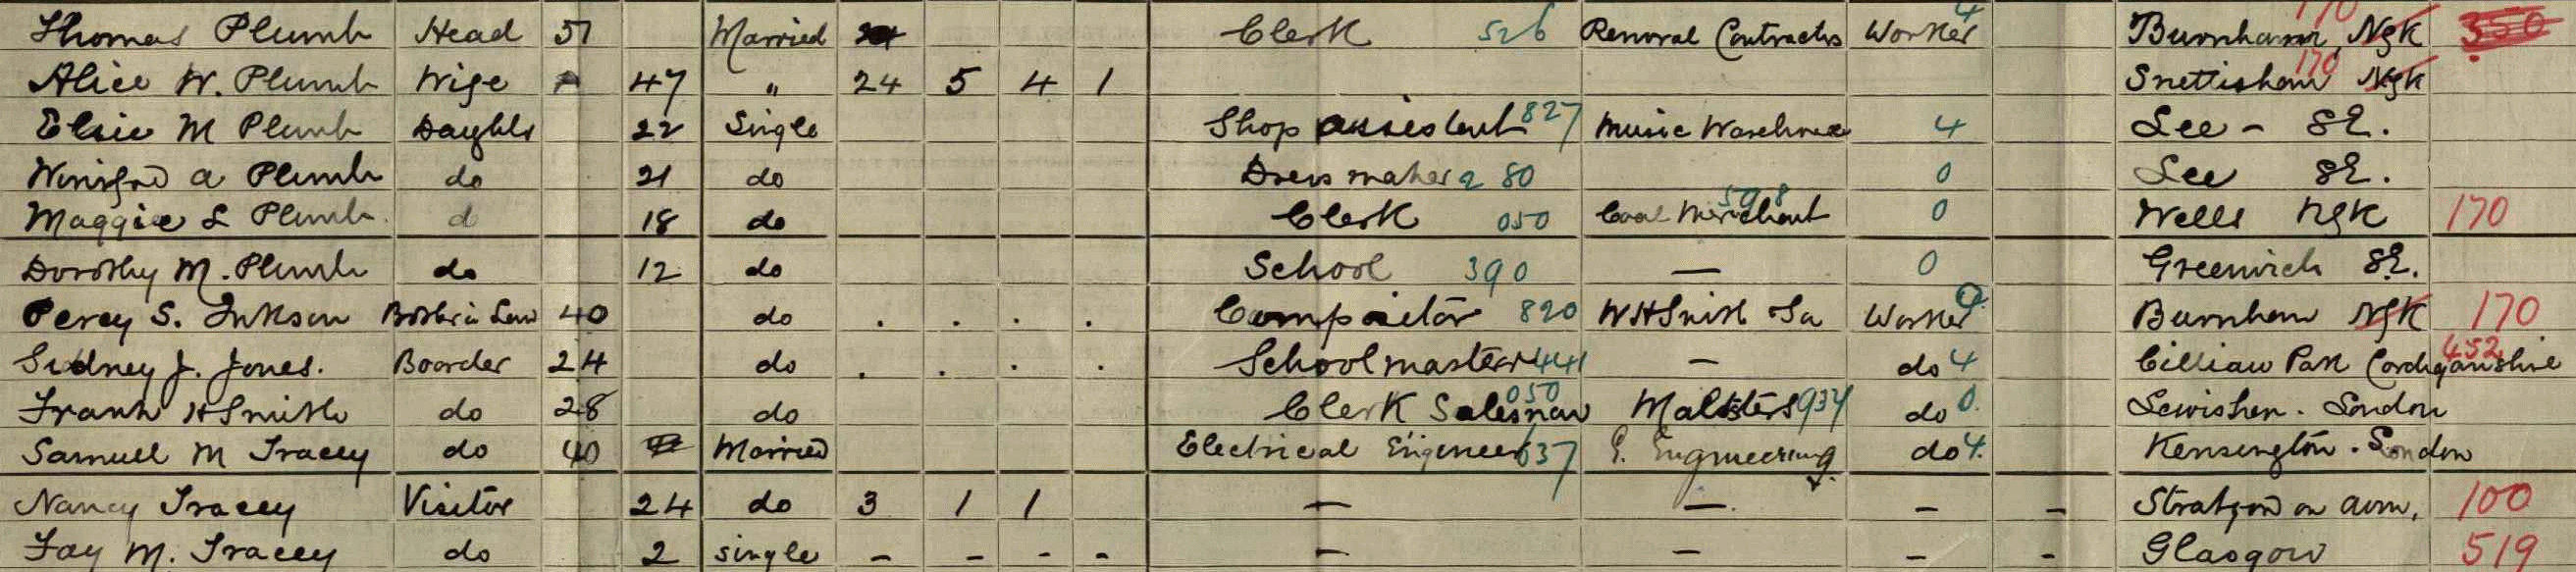 alice plumb 1911 census